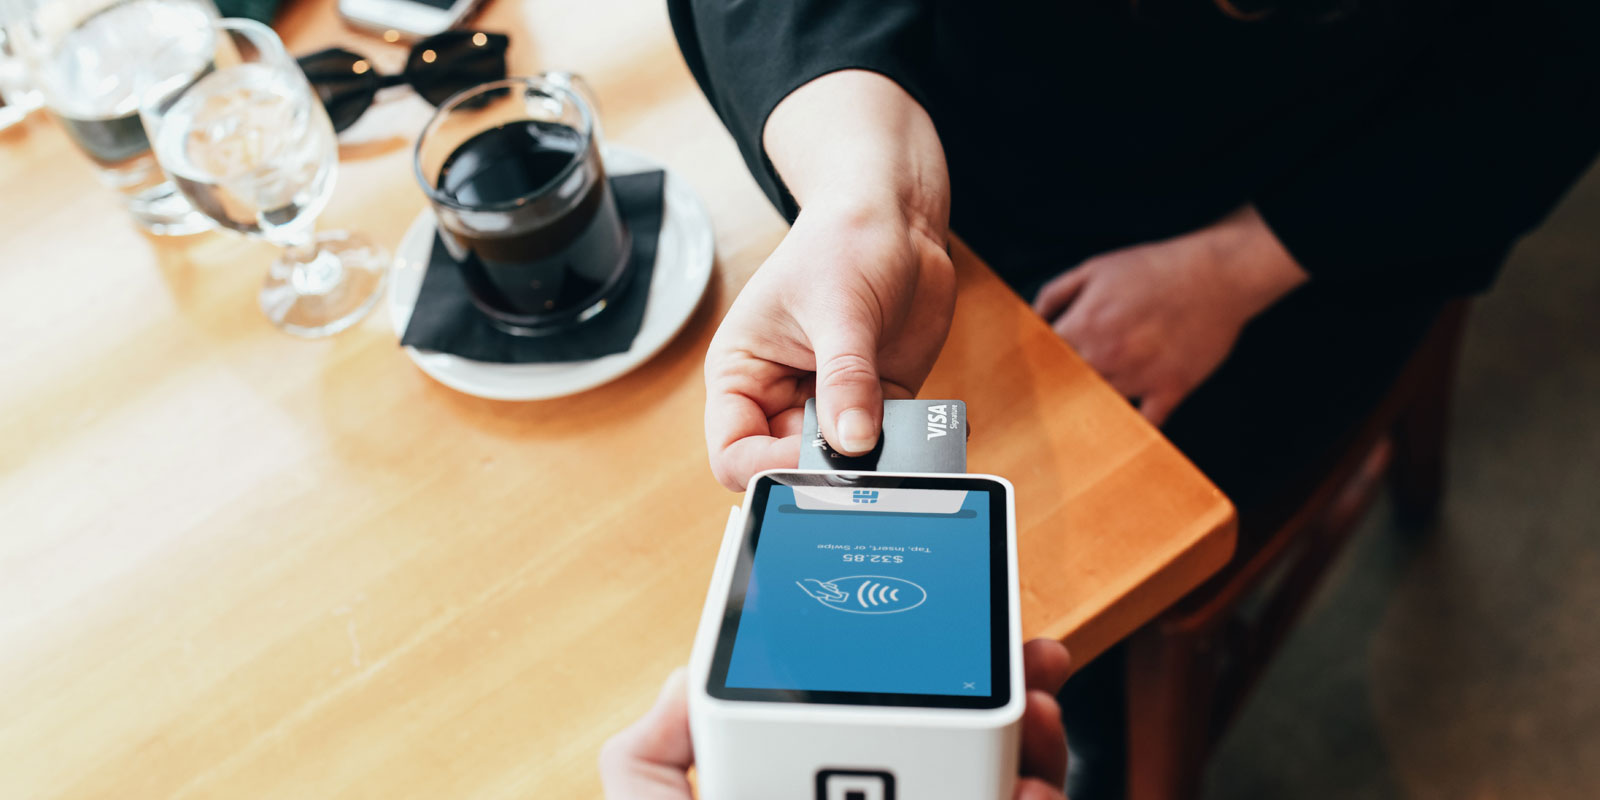 Imagem de uma pessoa pagando seu café em uma maquina de cartão de crédito.